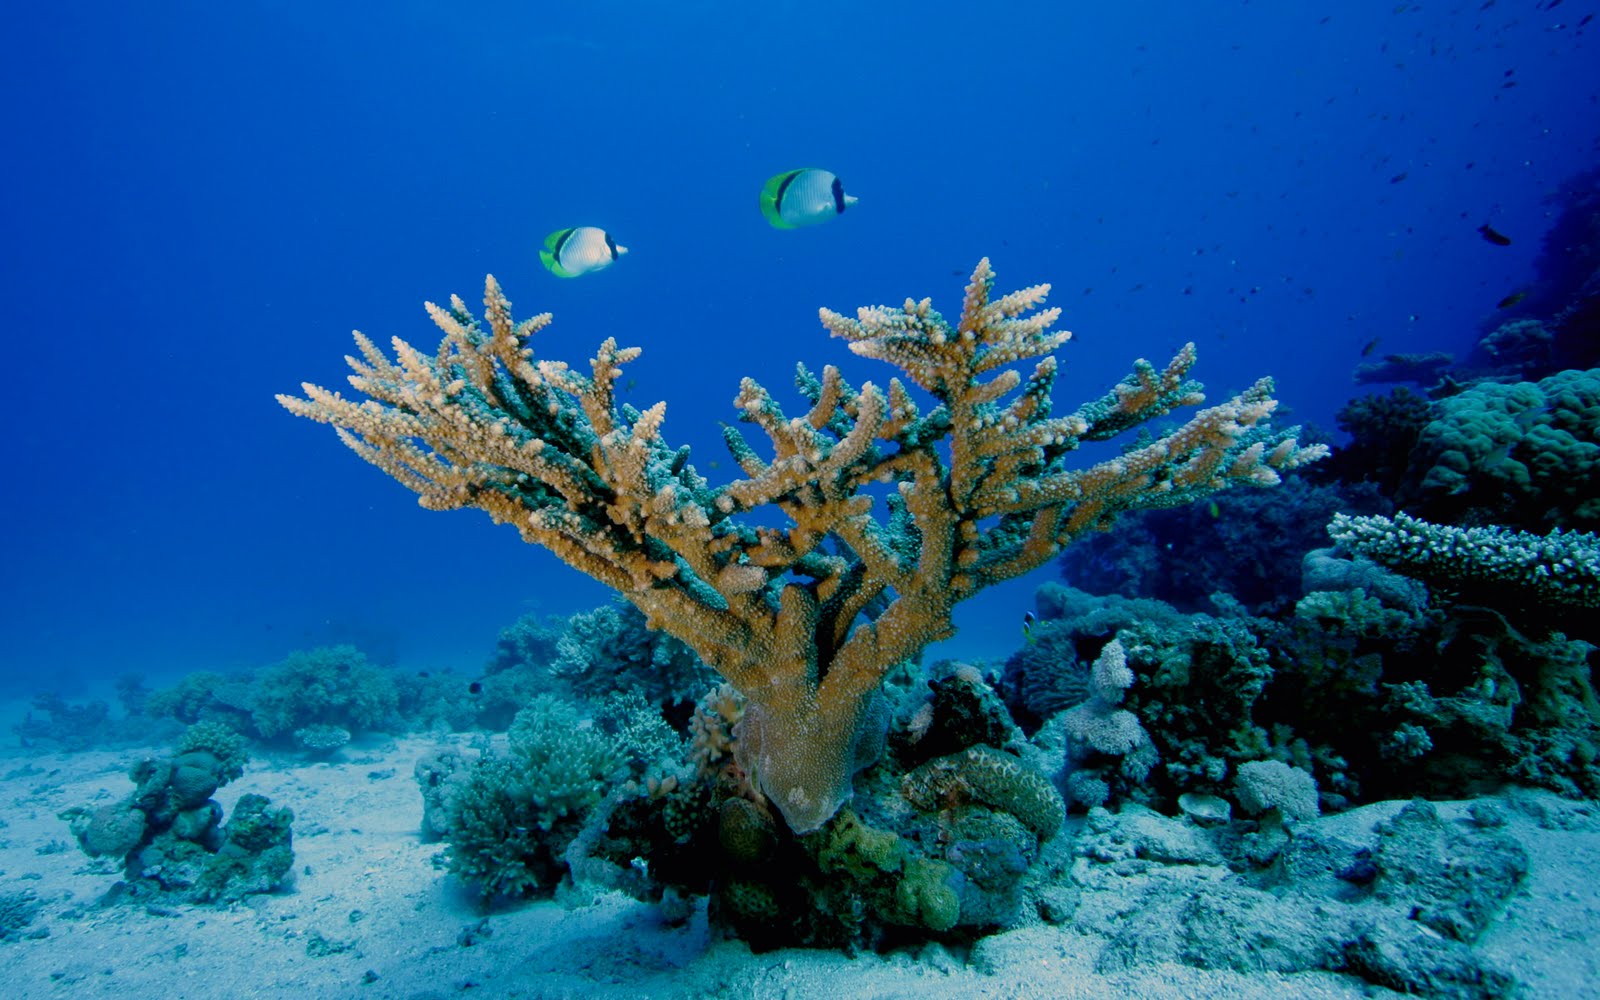 unterwasser hd wallpaper,riff,korallenriff,unter wasser,meeresbiologie,koralle